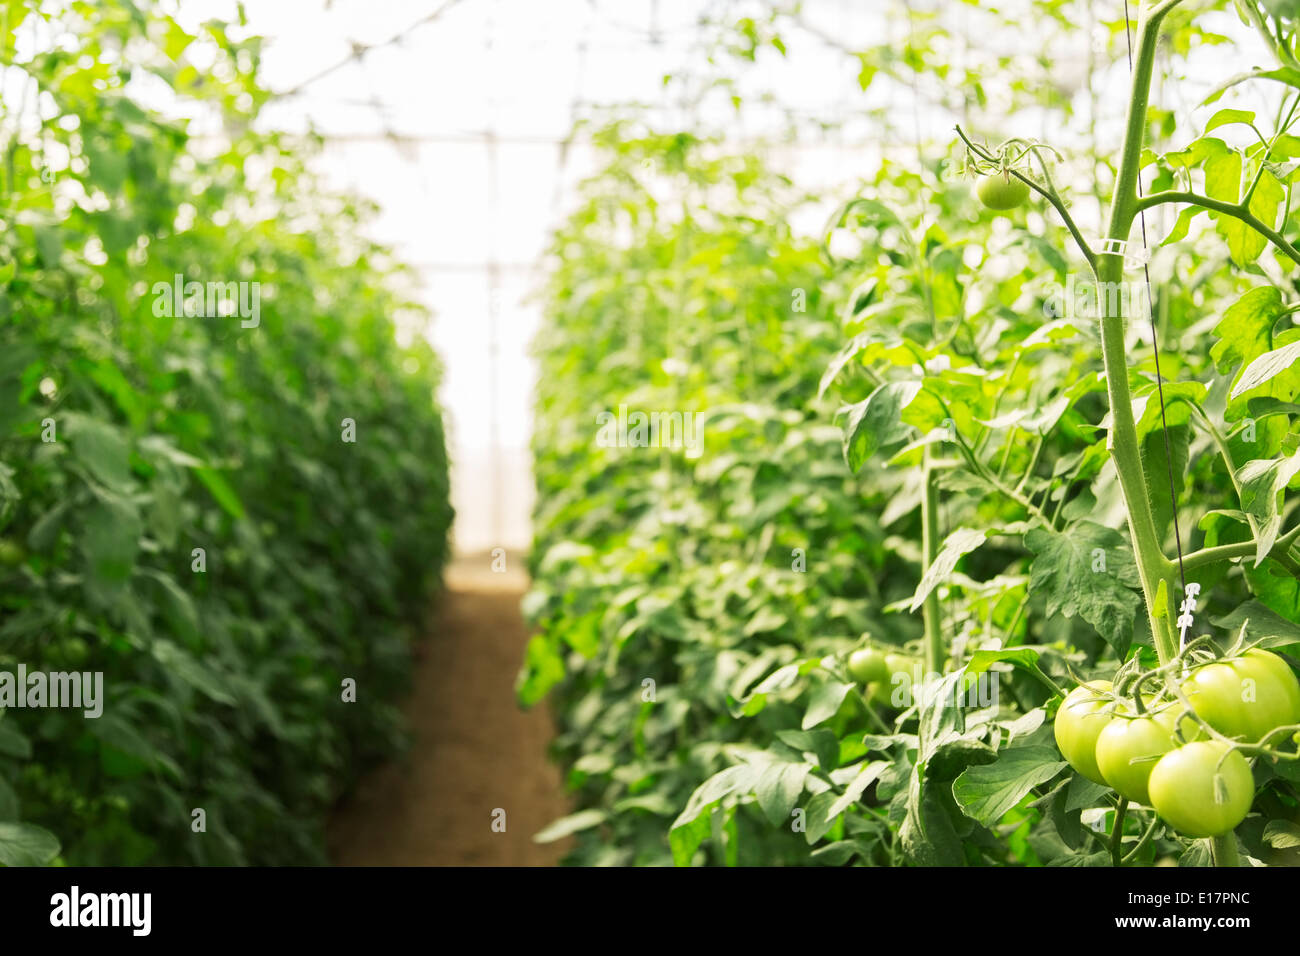 Grüne Tomaten wachsen auf Reben im Gewächshaus Stockfoto